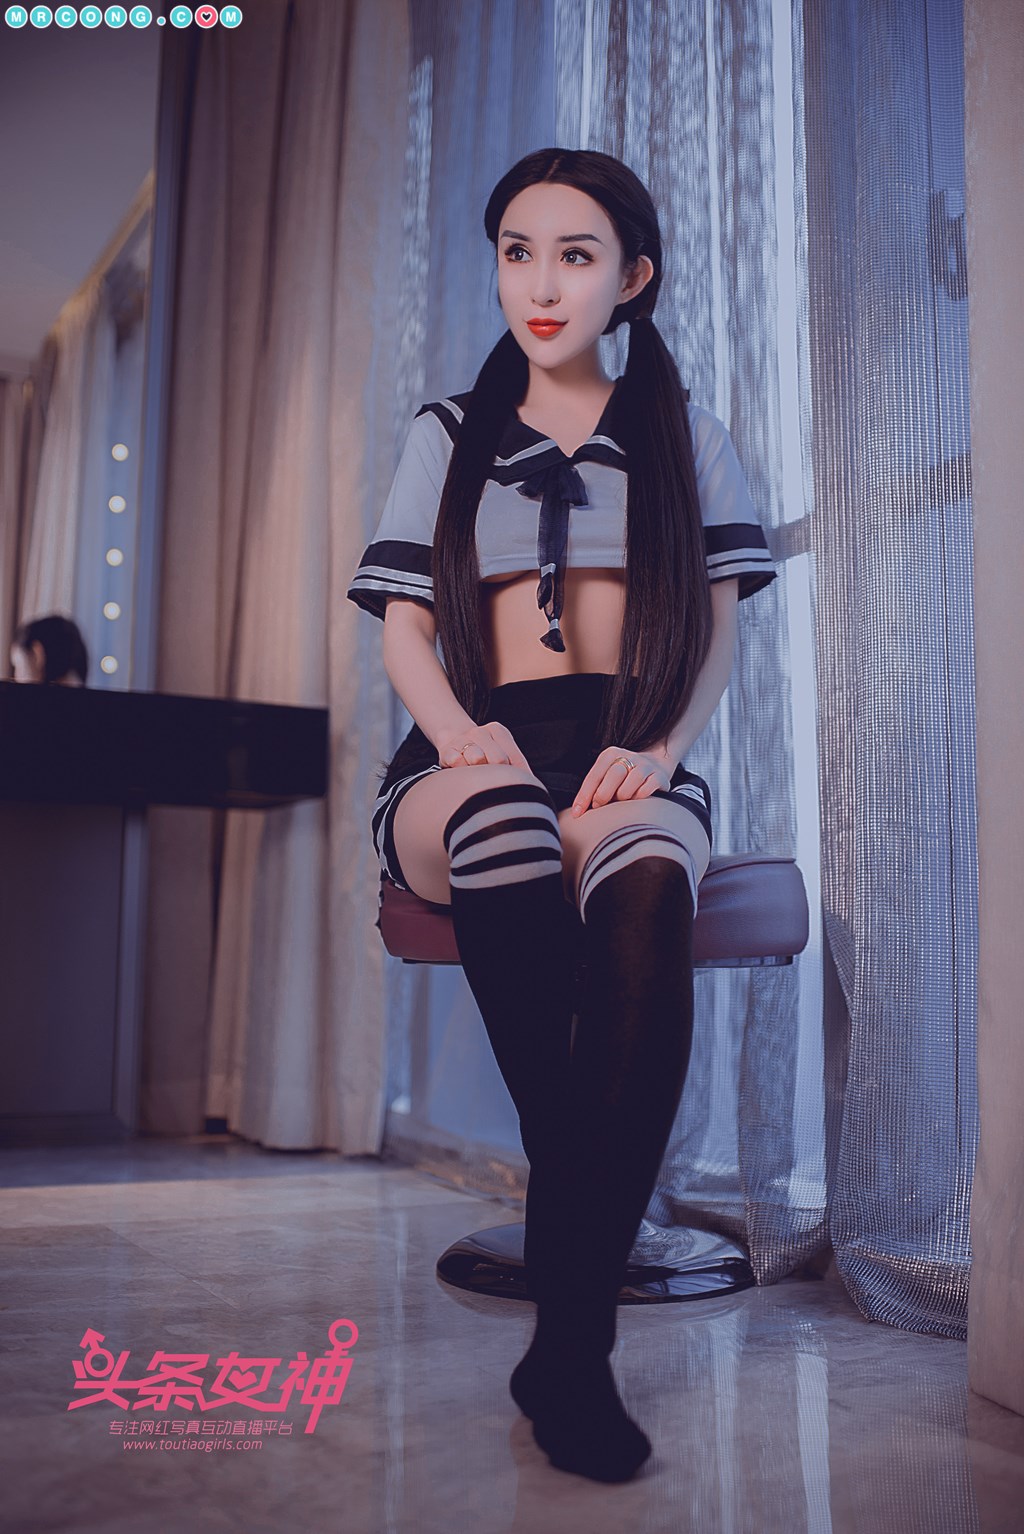 TouTiao 2018-05-13: Model Li Si Tong (李思彤) (21 photos) photo 1-1